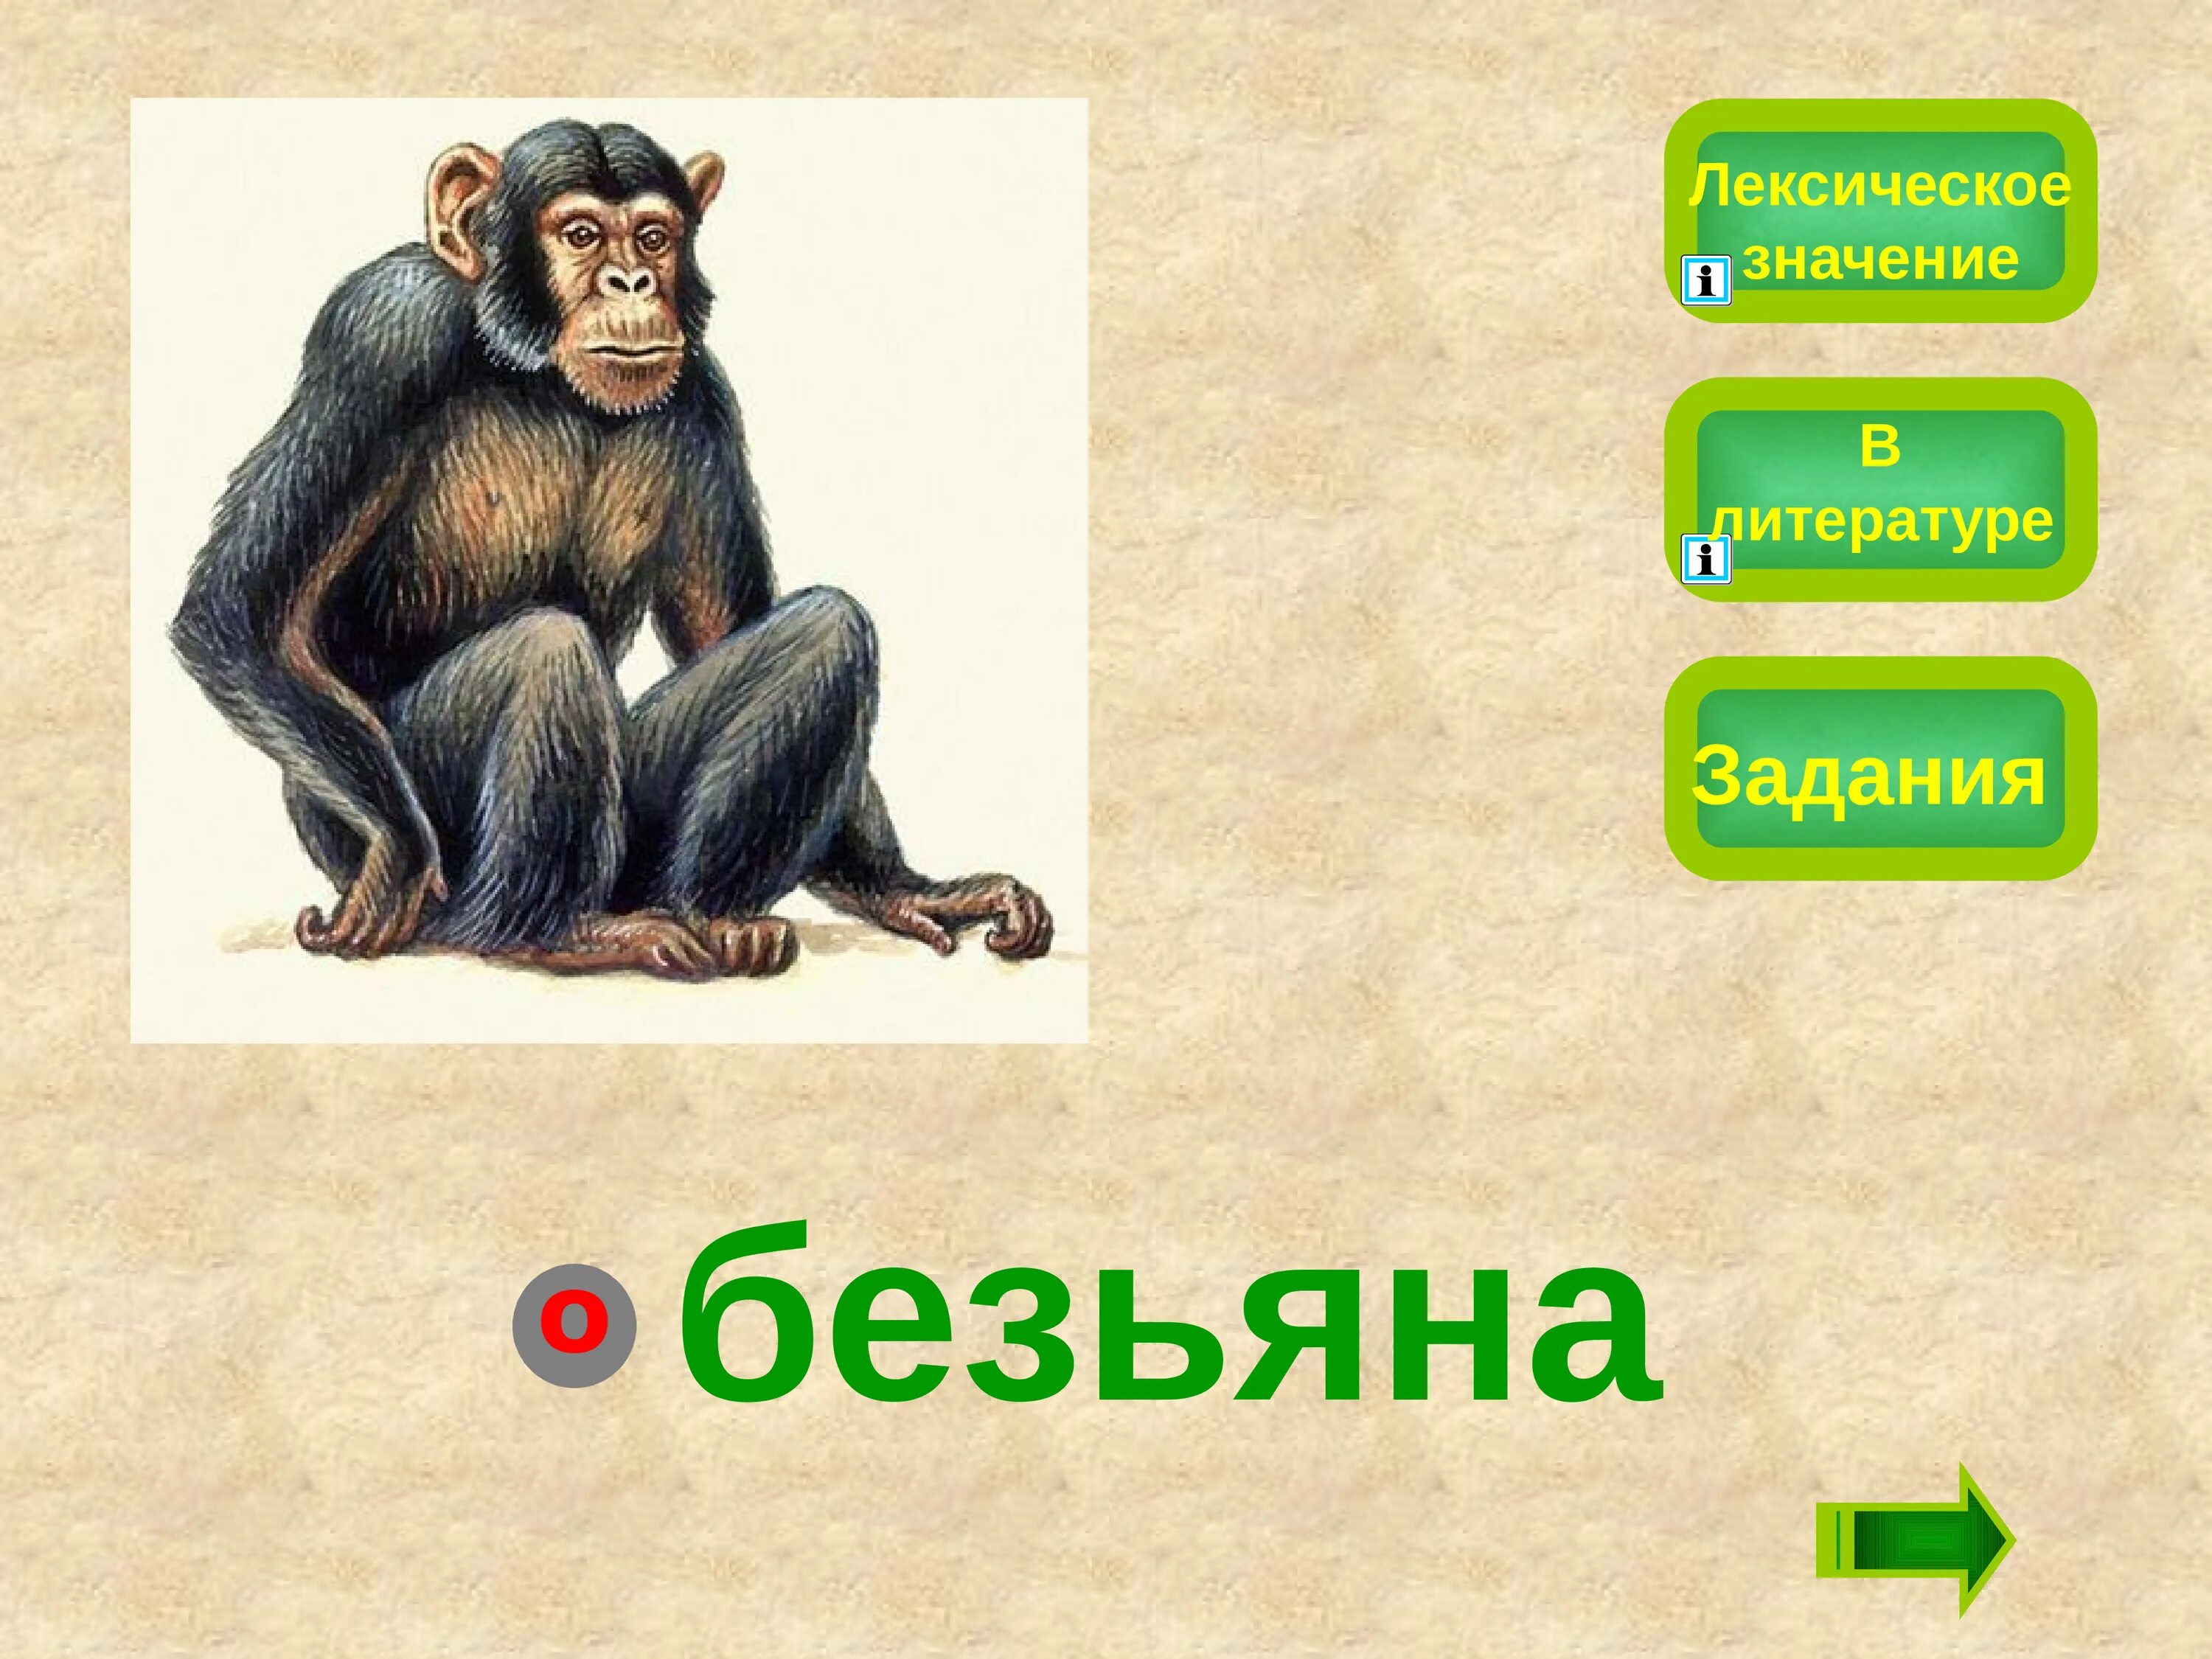 Предложение про обезьяну. Словарное слово обезьяна. Предложение со словом обезьяна. Словарное слово обезьяна в картинках. Тема текста про обезьянку